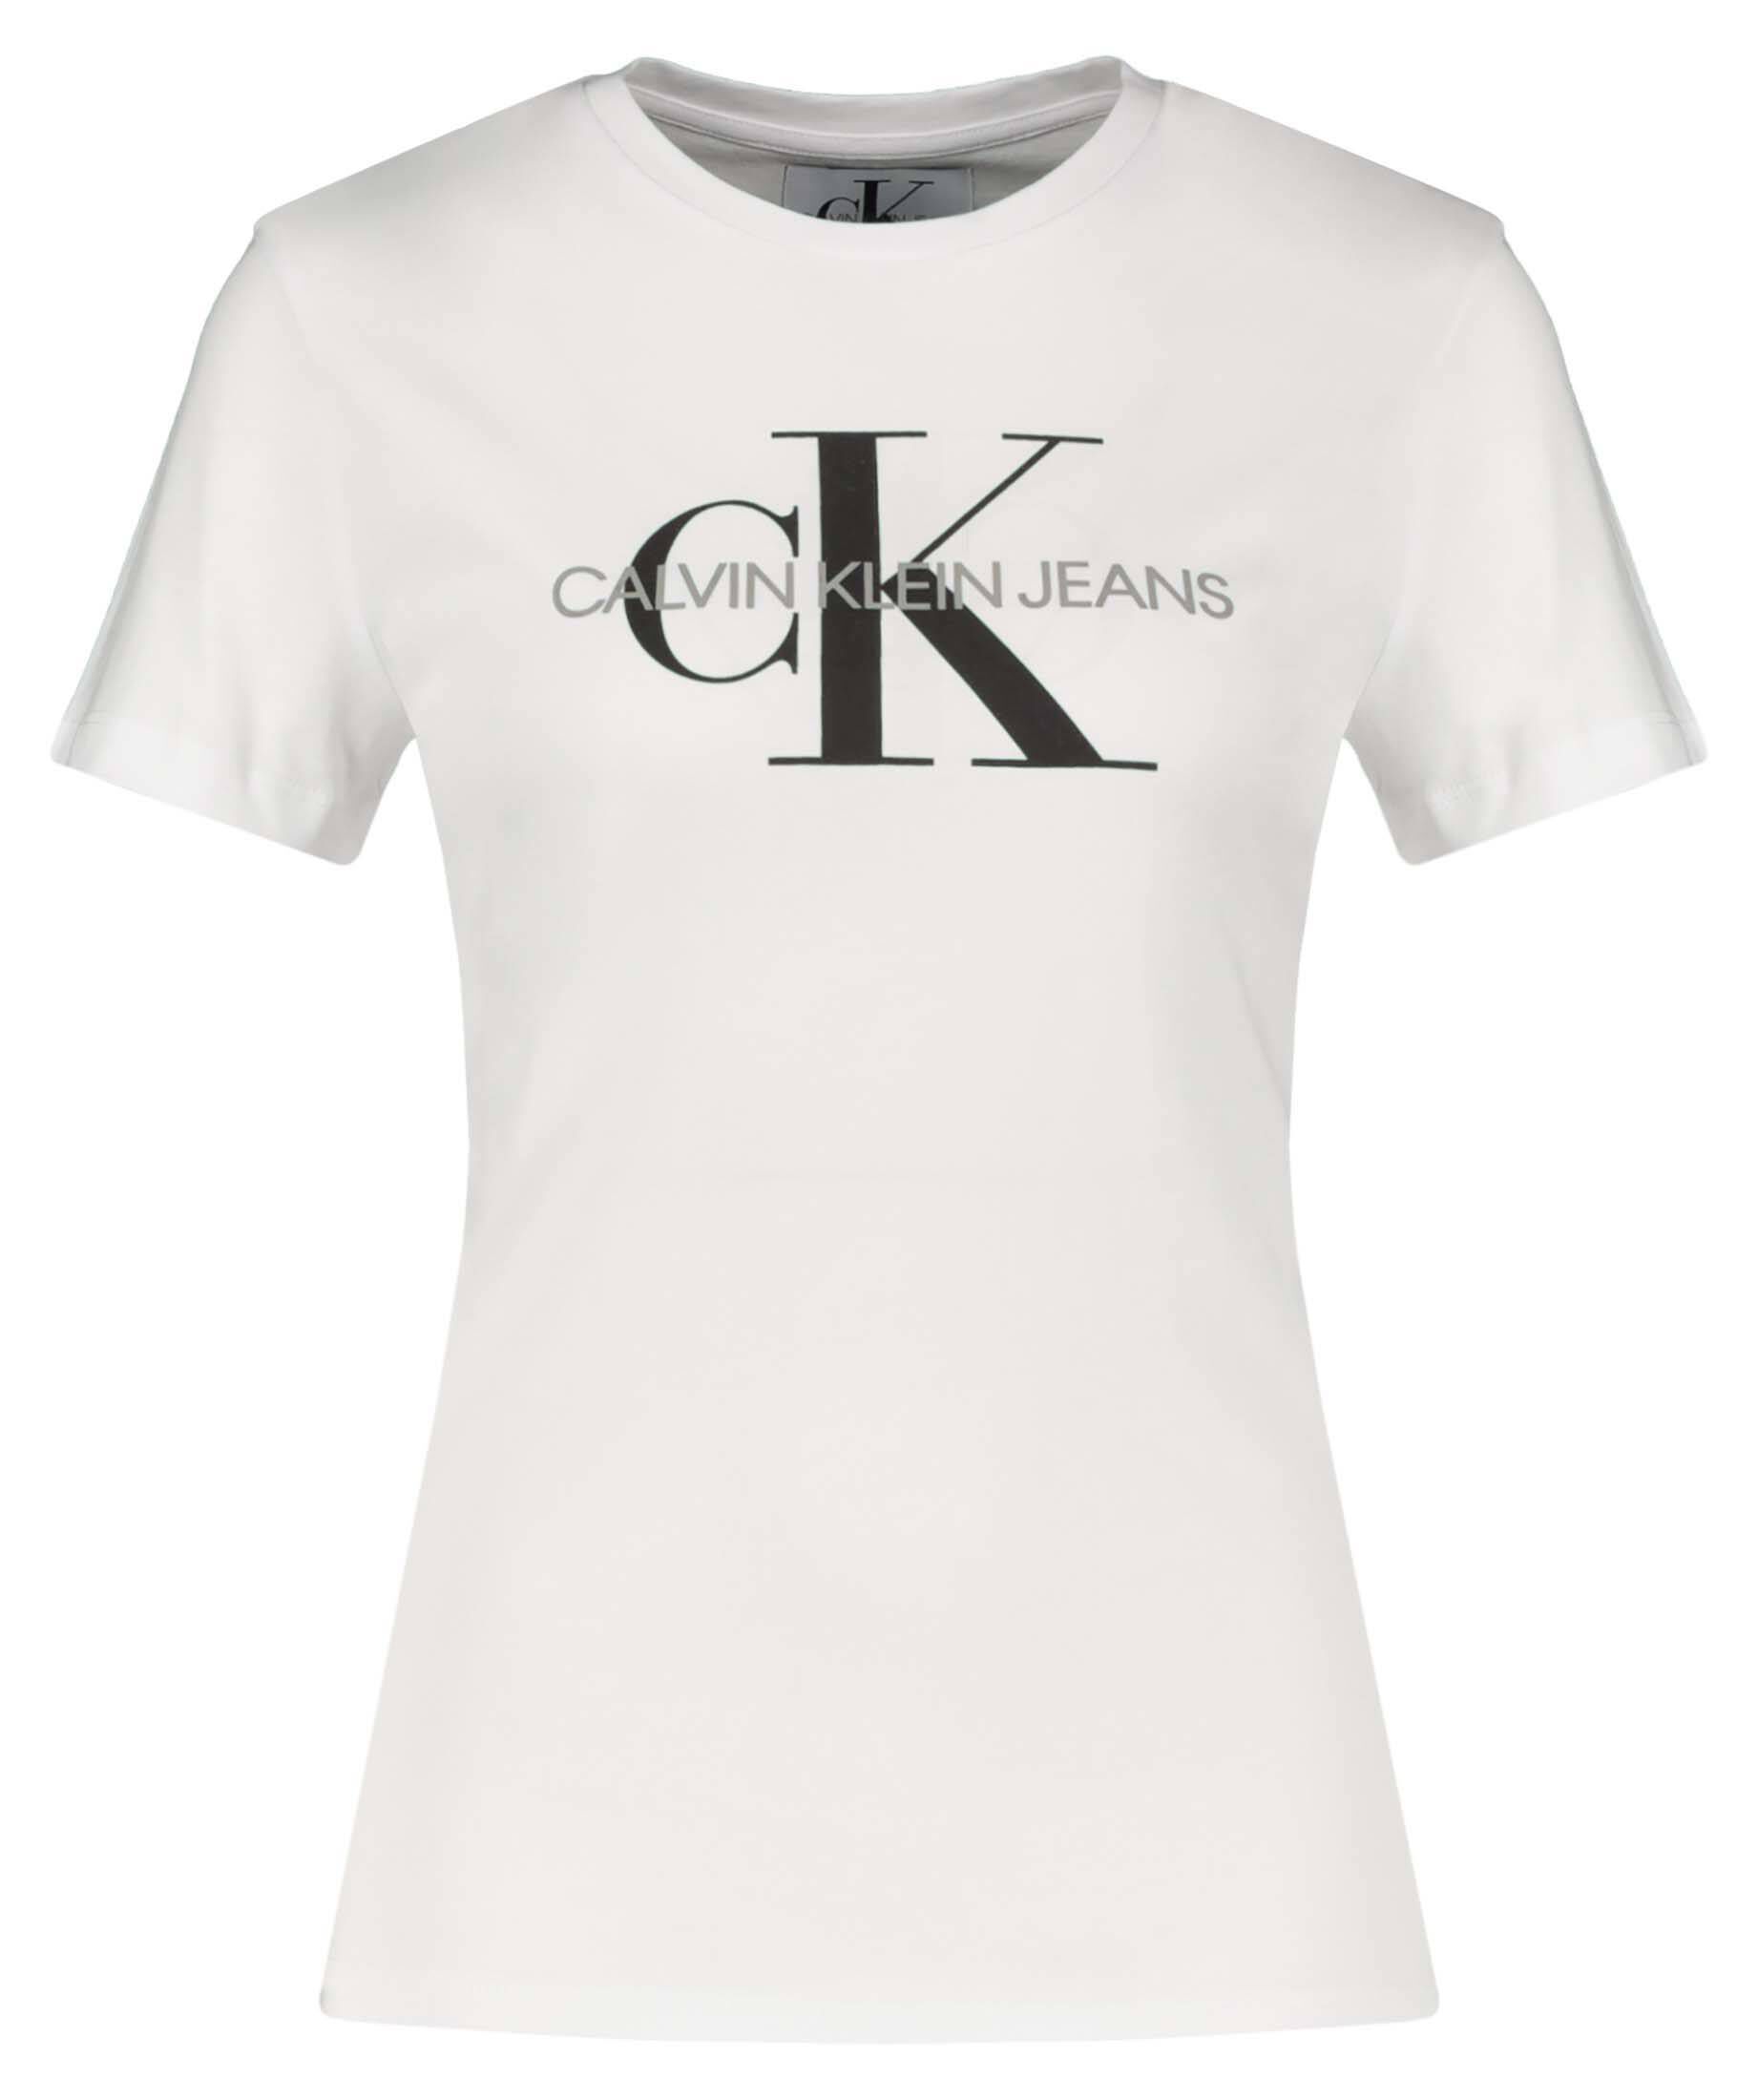 CALVIN KLEIN JEANS Damen T-Shirt REGULAR MONOGRAM TEE LOGO kaufen FIT | CORE engelhorn